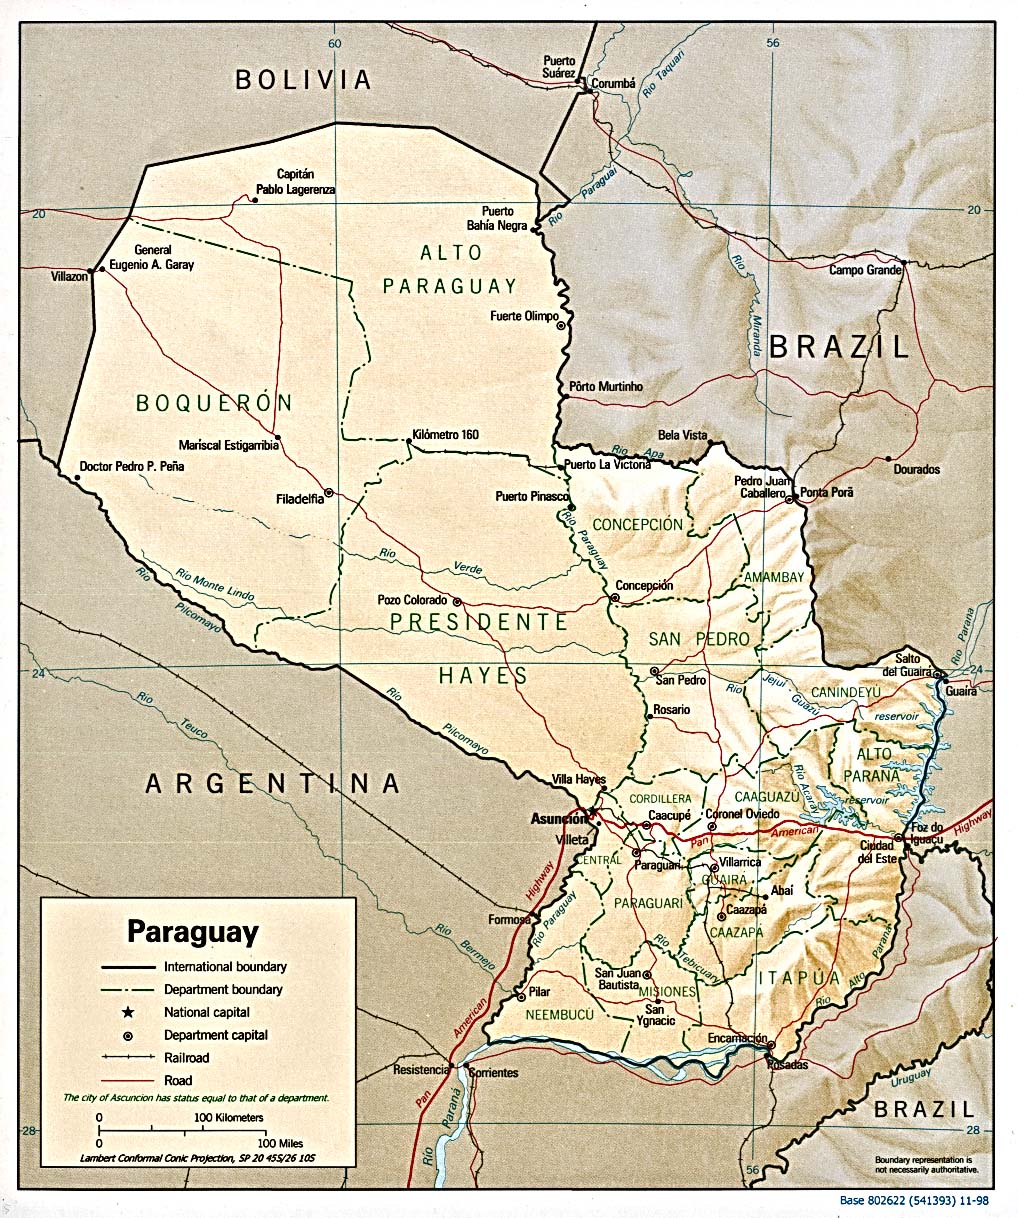 Mapa físico y político de Paraguay (1998)